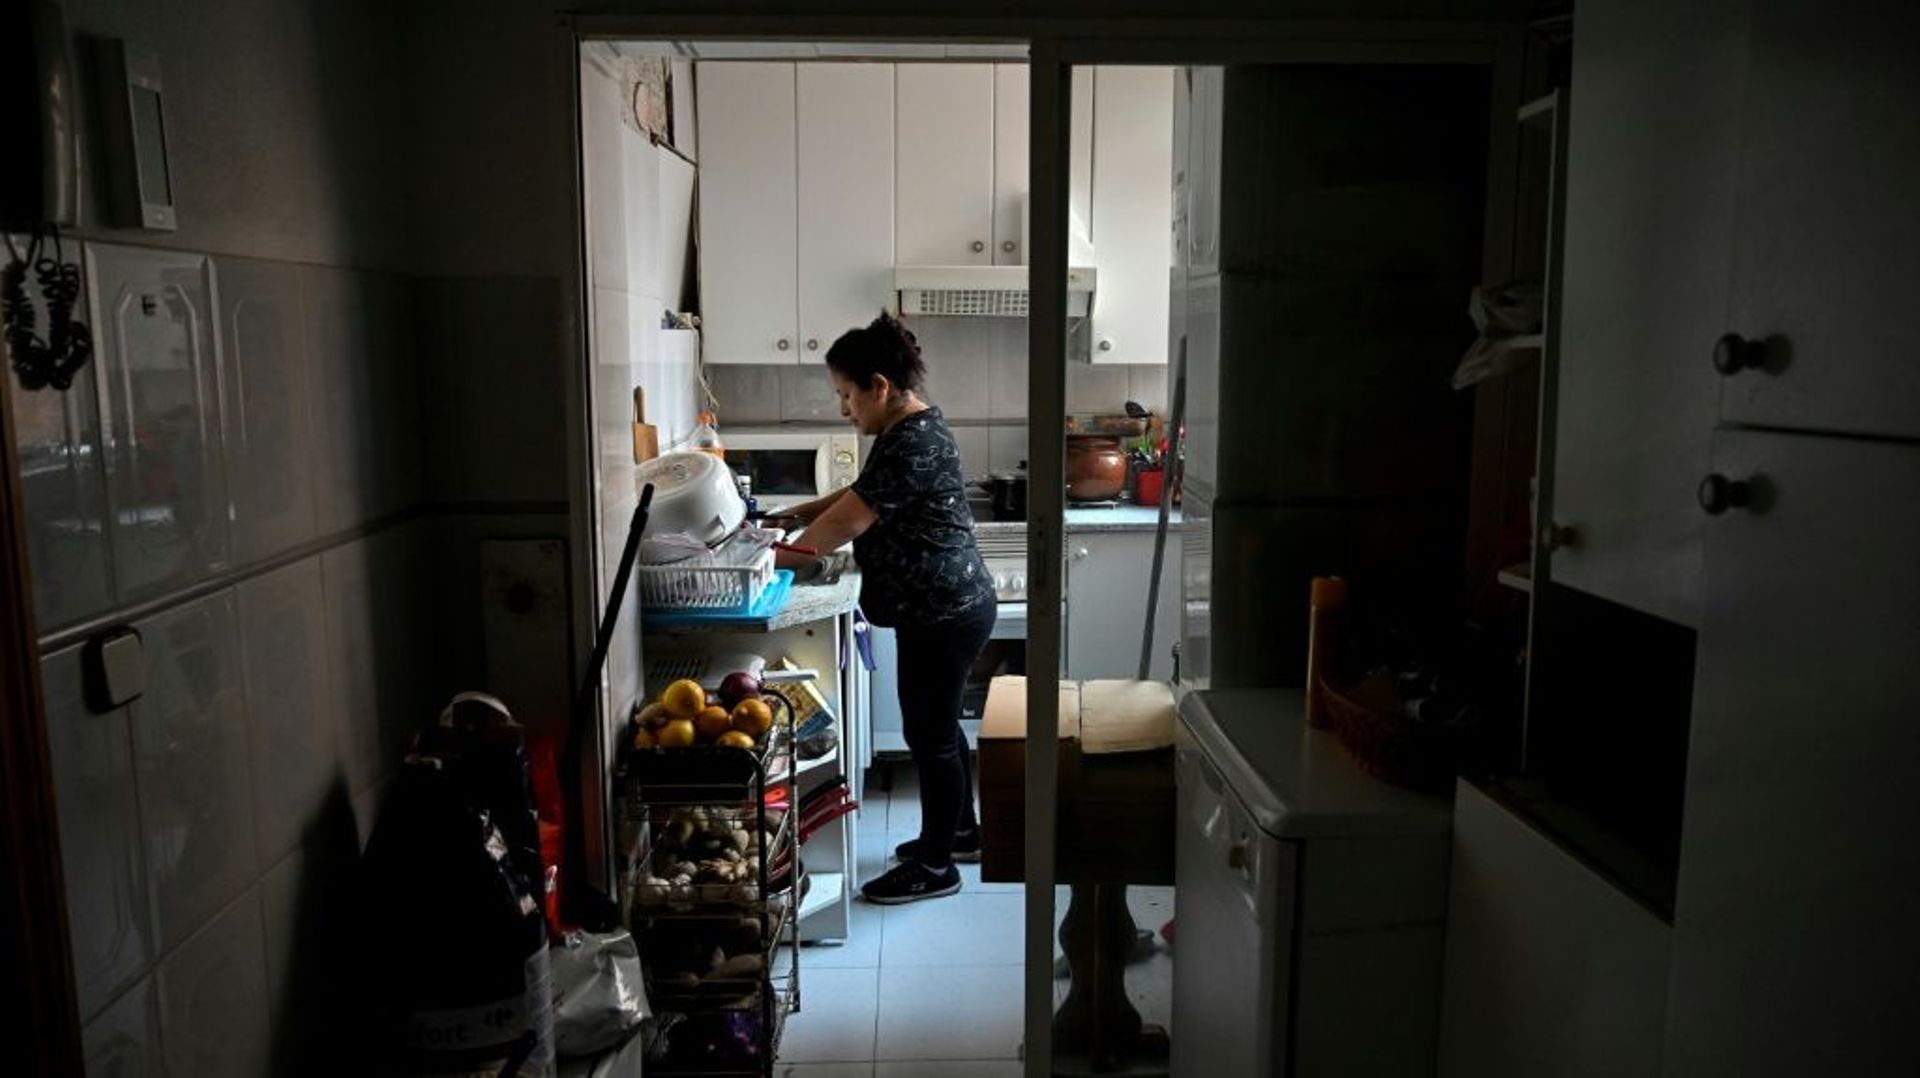 Pamela Ponce dans la cuisine de son appartement qu’elle ne peut plus chauffer en raison du prix trop élevé de l’électricité, le 26 janvier 2022 à Madrid.